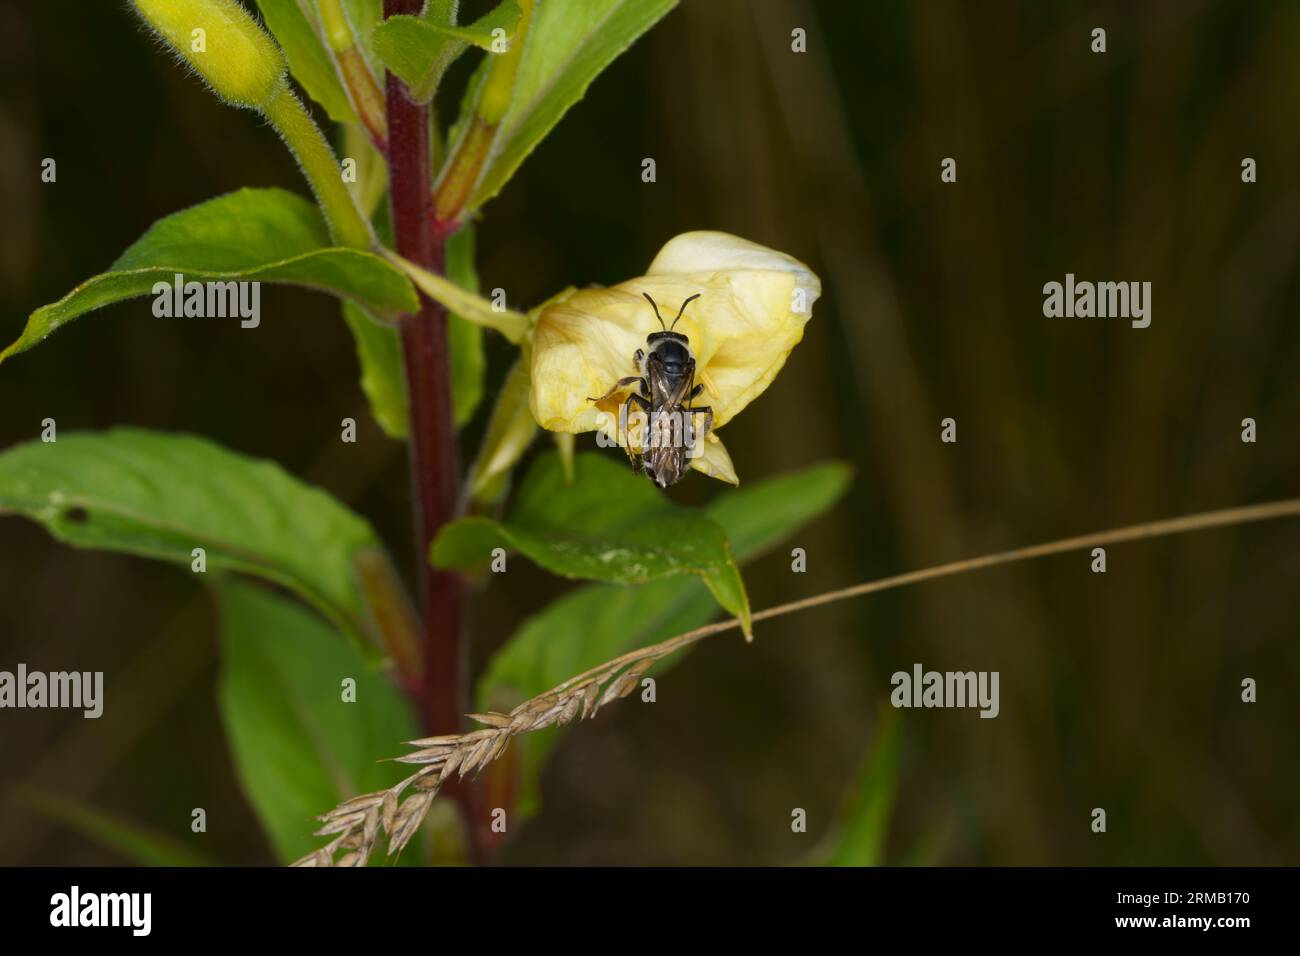 Lasioglossum zonulum famiglia Halictidae genere Lasioglossum testa di toro solco api natura selvaggia insetto carta da parati Foto Stock